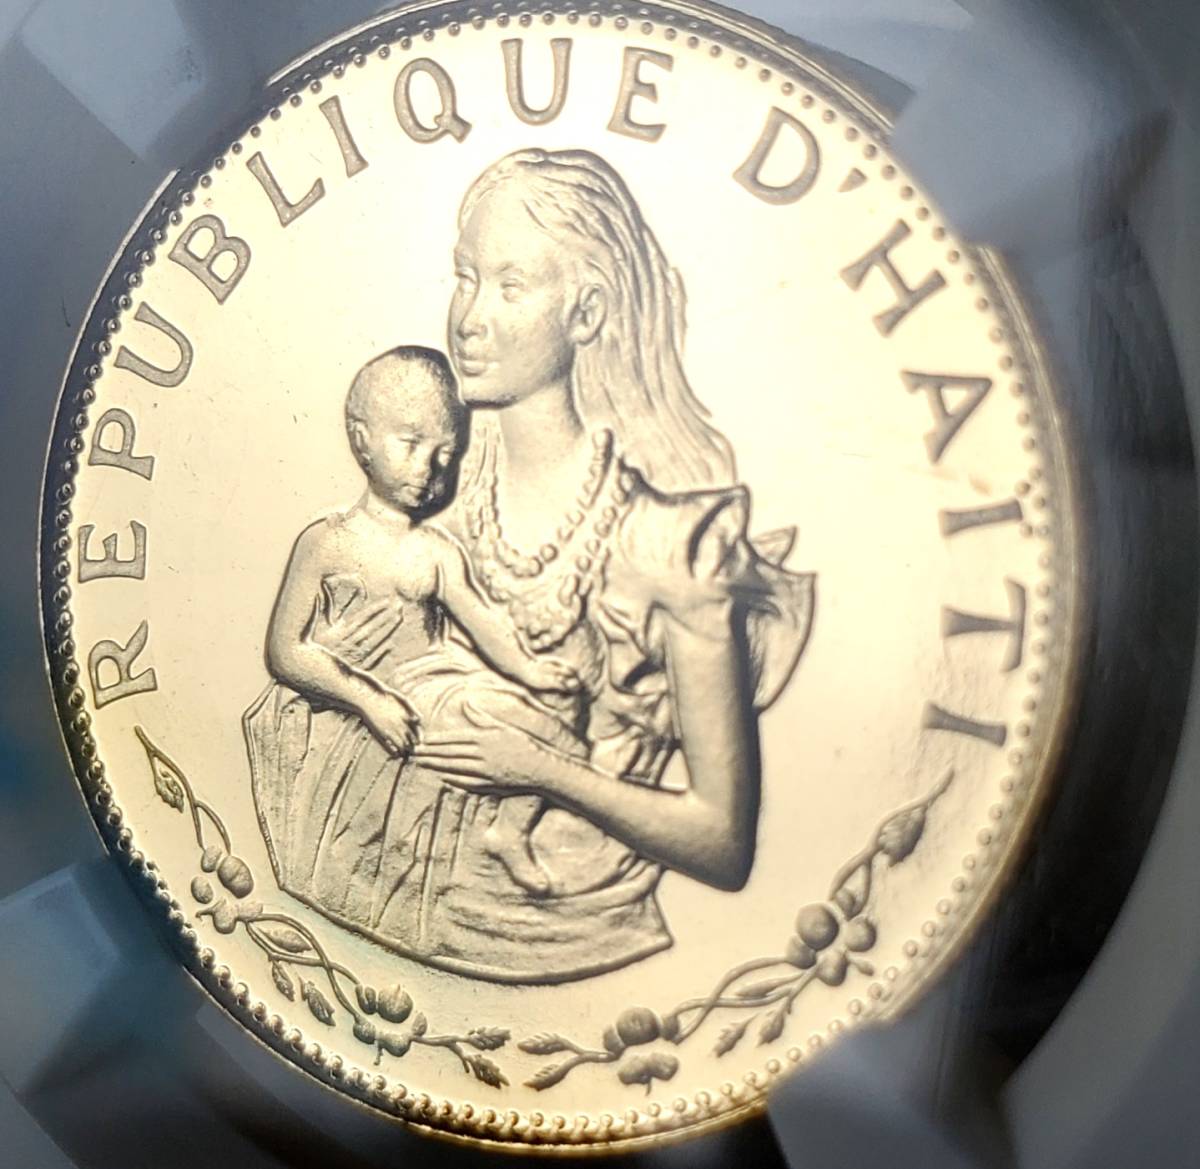 【高鑑定!ウルトラカメオ】1973年 ハイチ 子どもを抱く母 500グールド 金貨 PF67 アンティークコイン